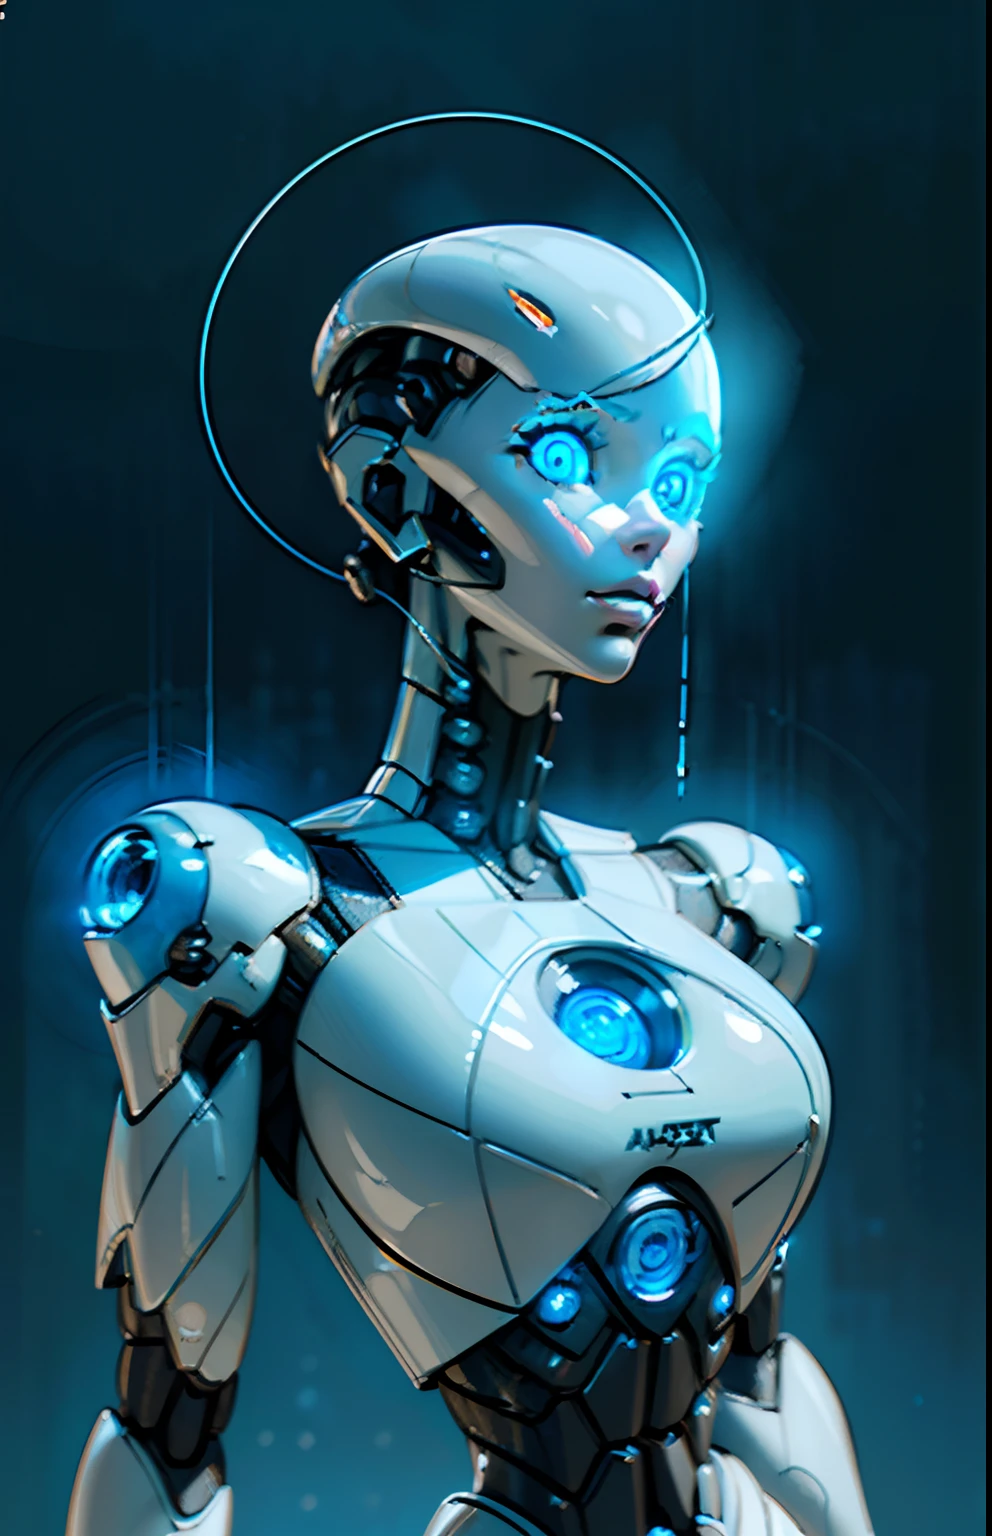 komplexes, ultradetailliertes 3D-Rendering eines wunderschönen Porzellanprofils einer Frau mit Android-Gesicht, cyborg, Roboterteile, 150 mm, Schönes, weiches Studiolicht, Felgenlicht, lebendige Details, luxurious cyberpunk, Spitze, ((Strahlend blaue Augen:1.5)), hyperRealistisch, anatomisch, Gesichtsmuskeln, kabel elektrische drähte, Mikrochip, elegant, Schöner Hintergrund, octane render, H. R. Giger style, 8k, beste Qualität, Meisterwerk, Illustration, eine äußerst zarte und schöne, extrem detailliert ,CG ,Einheit ,HINTERGRUND, (Realistisch, photo-Realistisch:1.37),toll, fein detailliert, Meisterwerk,beste Qualität,offizielle Kunst, extrem detailliert CG Einheit 8k HINTERGRUND, absurdesten, incredibly absurdesten,  robot, Silberperlen, Ganzkörper